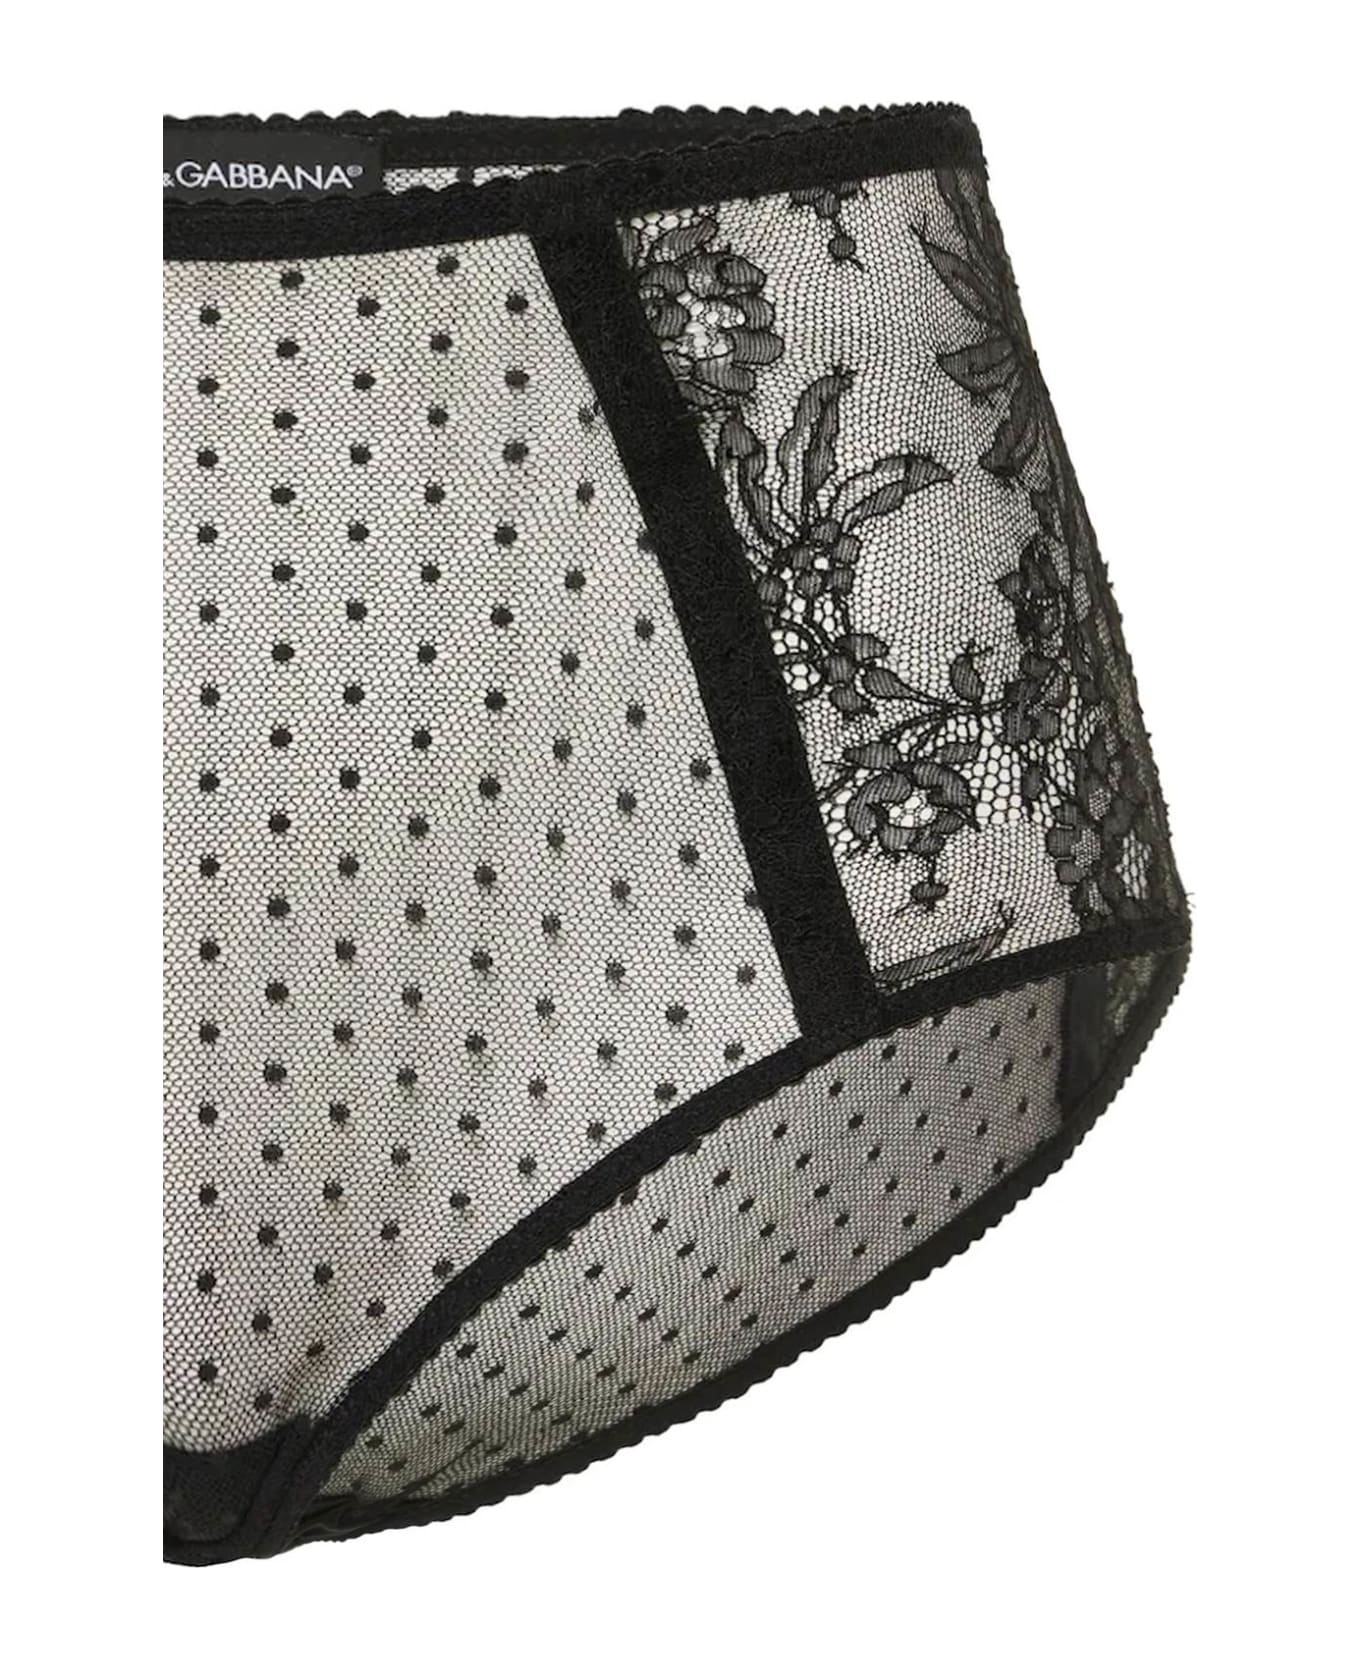 Dolce Bianco & Gabbana High-waisted Lace Briefs - NERO (Black)